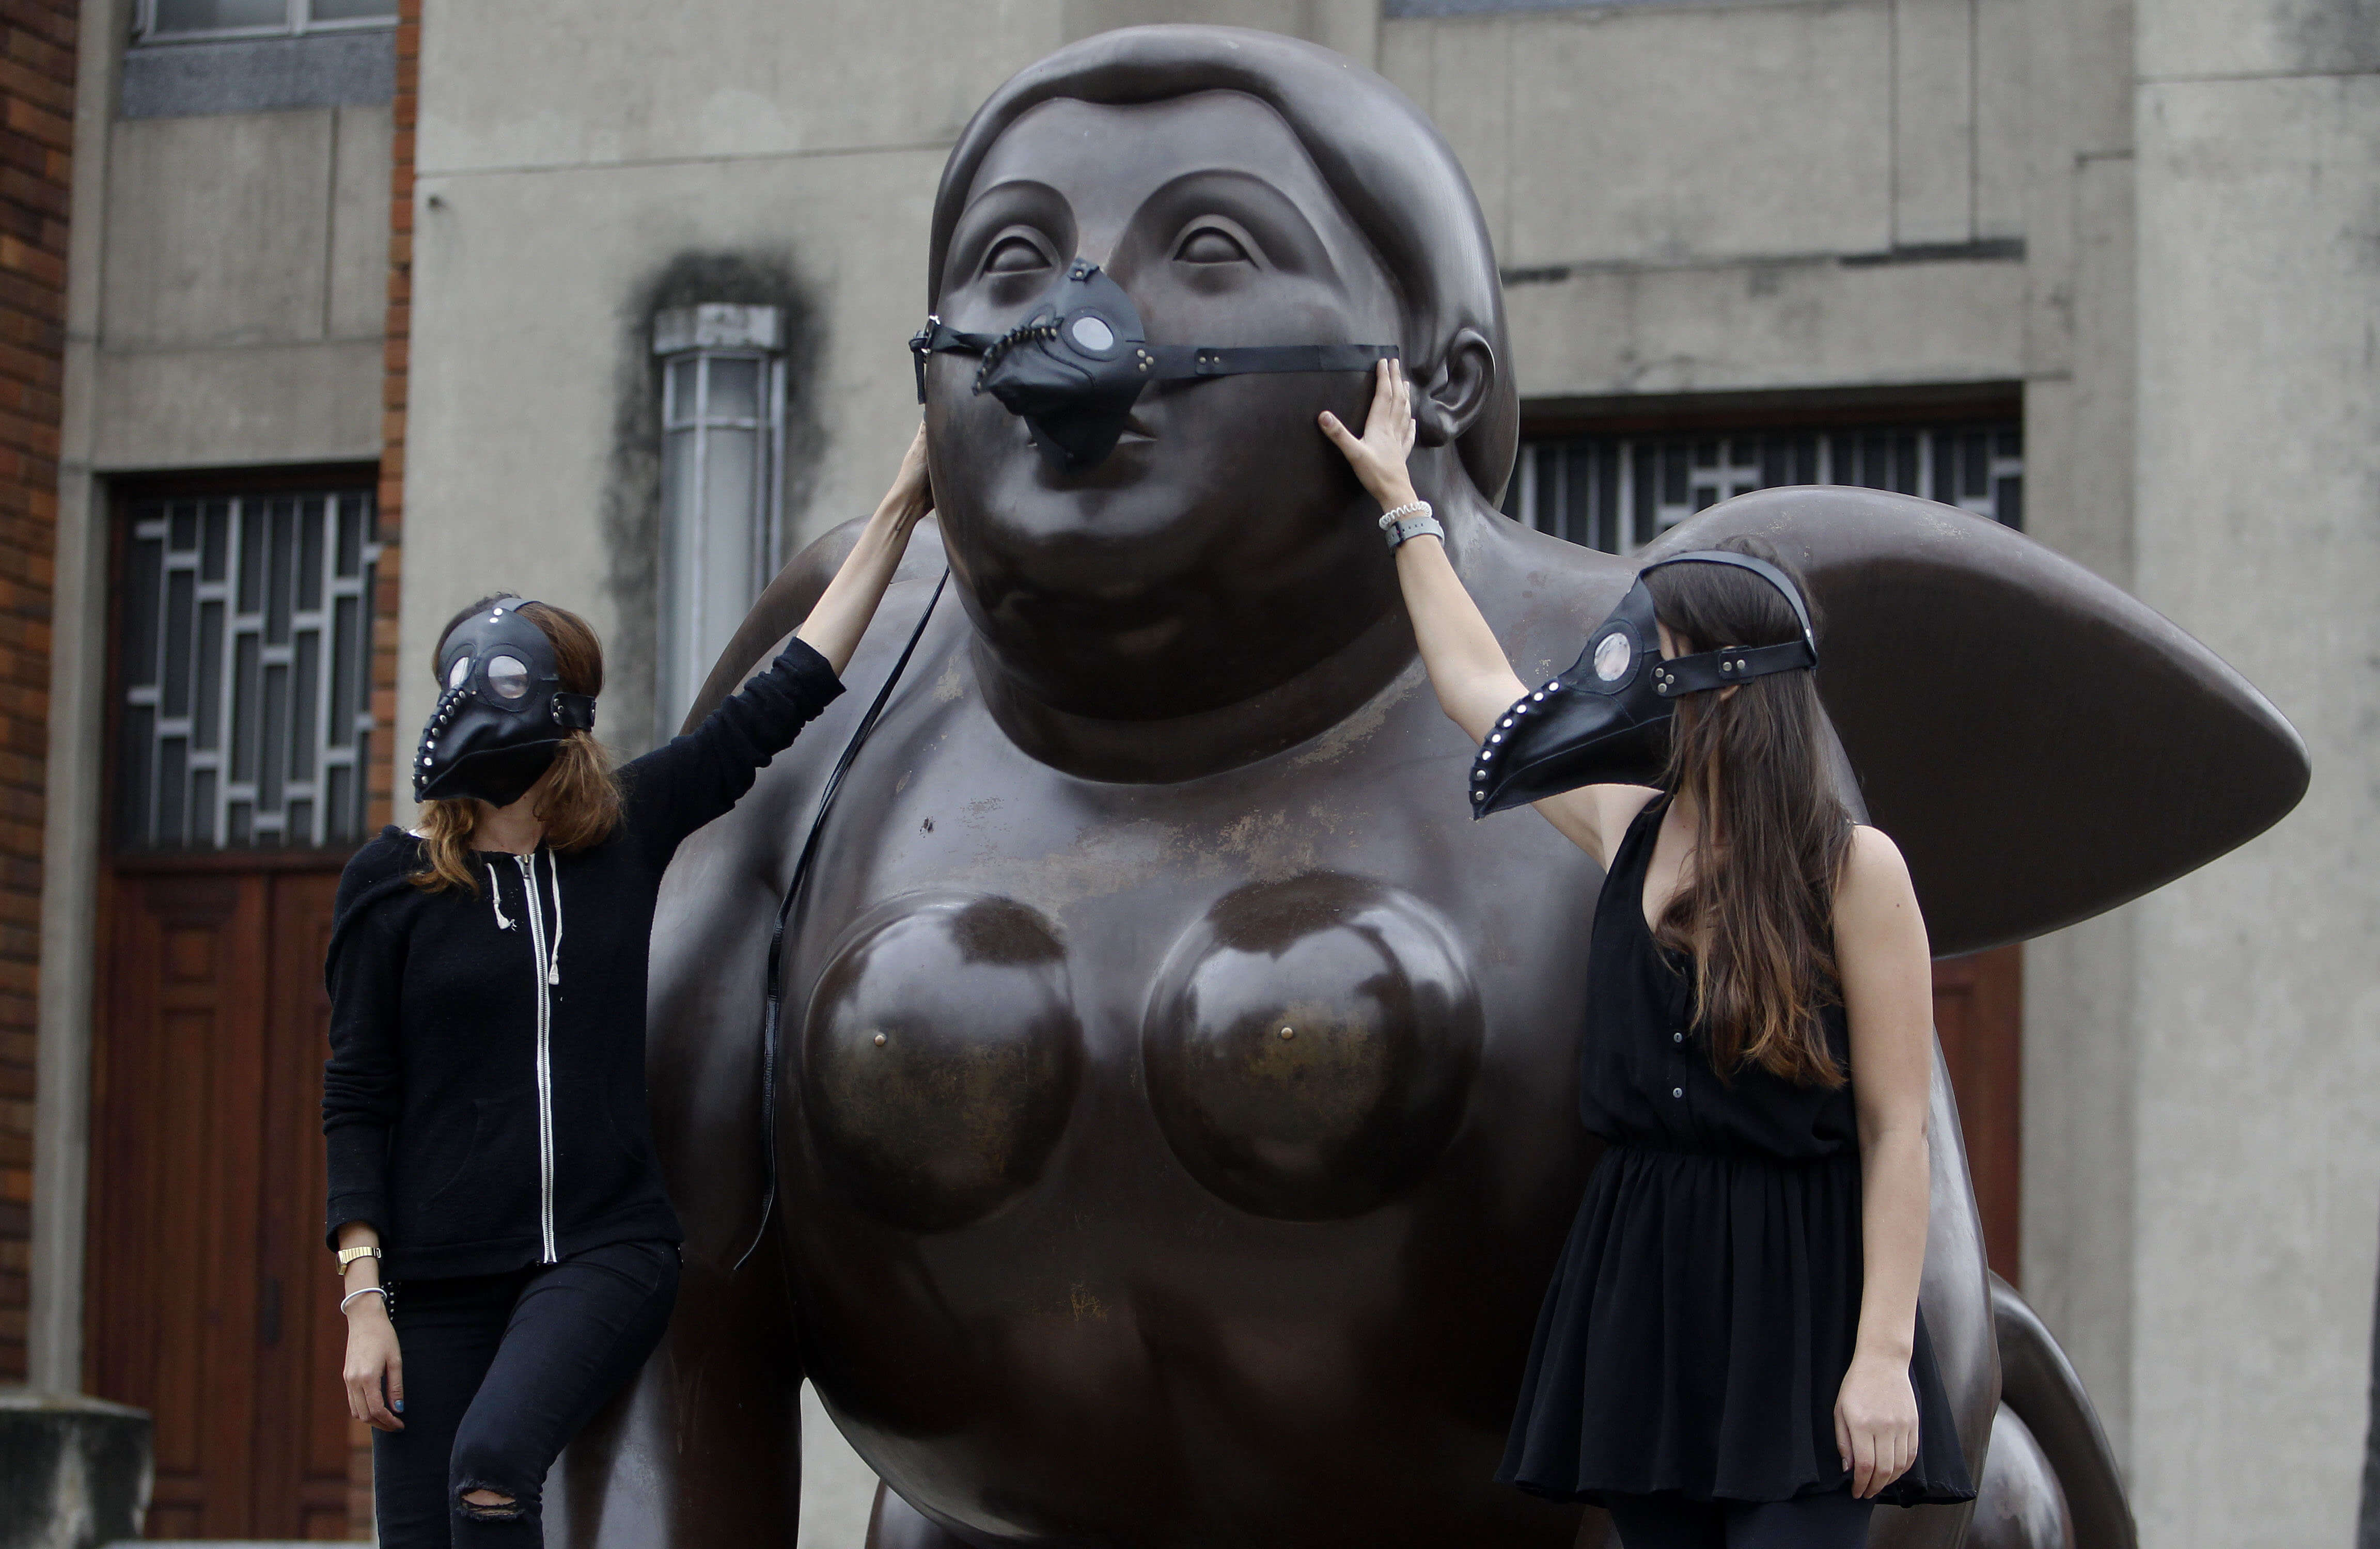 Vista de la obra "Esfinge" del artista Fernando Botero, trae puesta una máscara de médicos de la peste negra, colocada por ambientalistas en la Plaza Botero en Medellín, Colombia. (EFE)